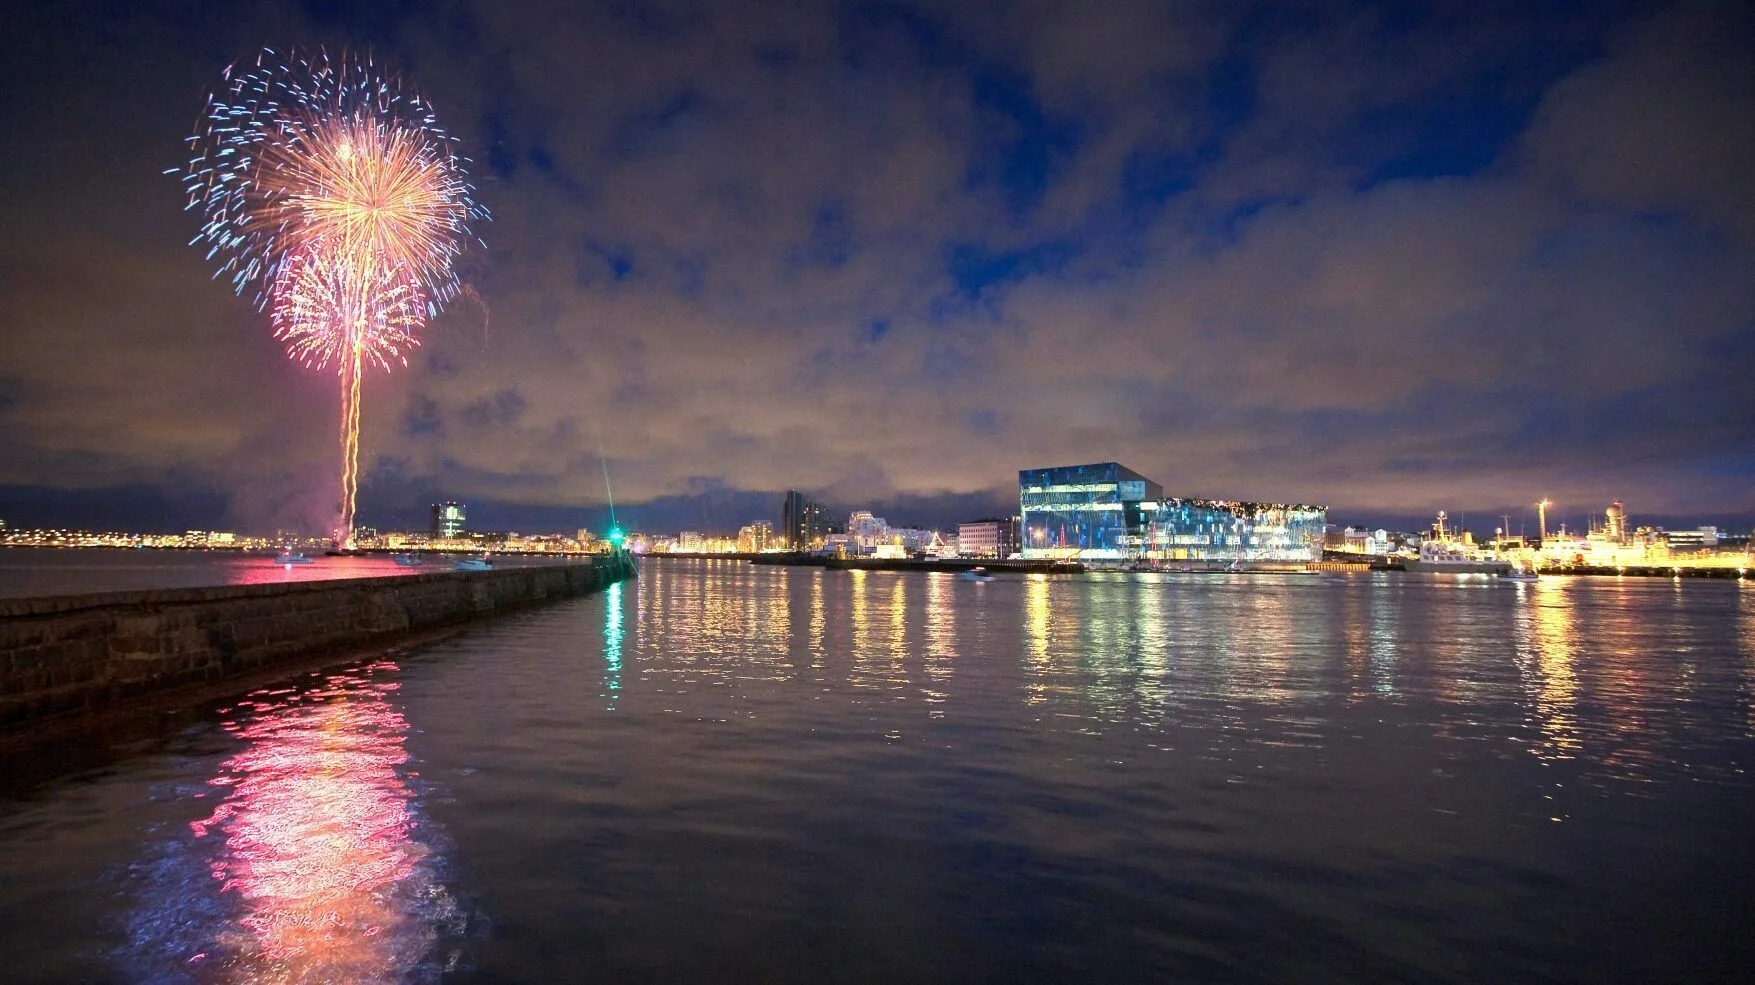 Silvester Reykjavik Harpa, Feuerwerk am Himmel, das sich im Wasser spiegelt. Lichter der Stadt und die Harpa am Horizont